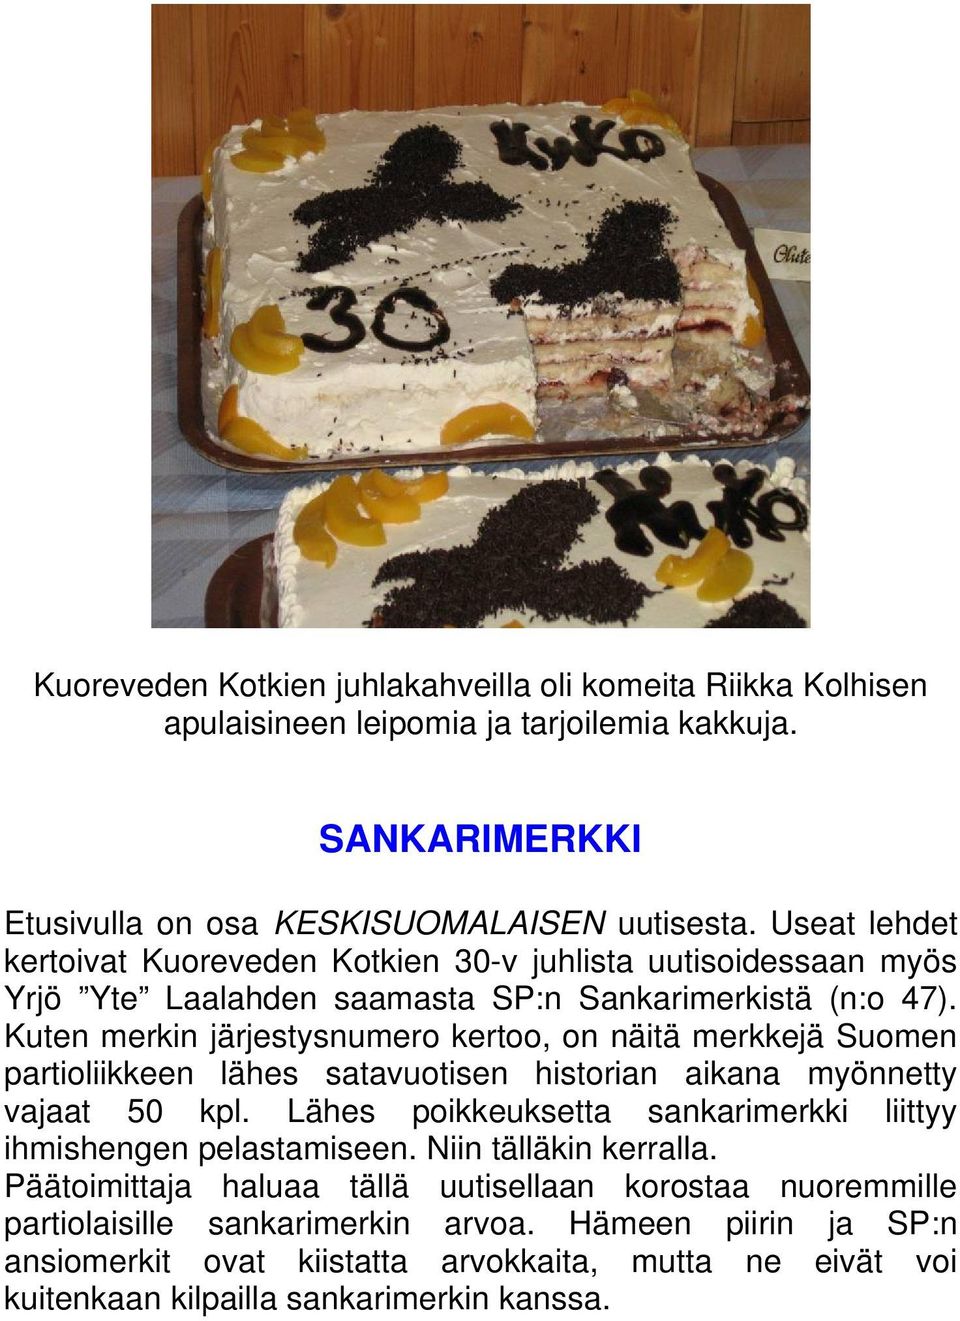 Kuten merkin järjestysnumero kertoo, on näitä merkkejä Suomen partioliikkeen lähes satavuotisen historian aikana myönnetty vajaat 50 kpl.